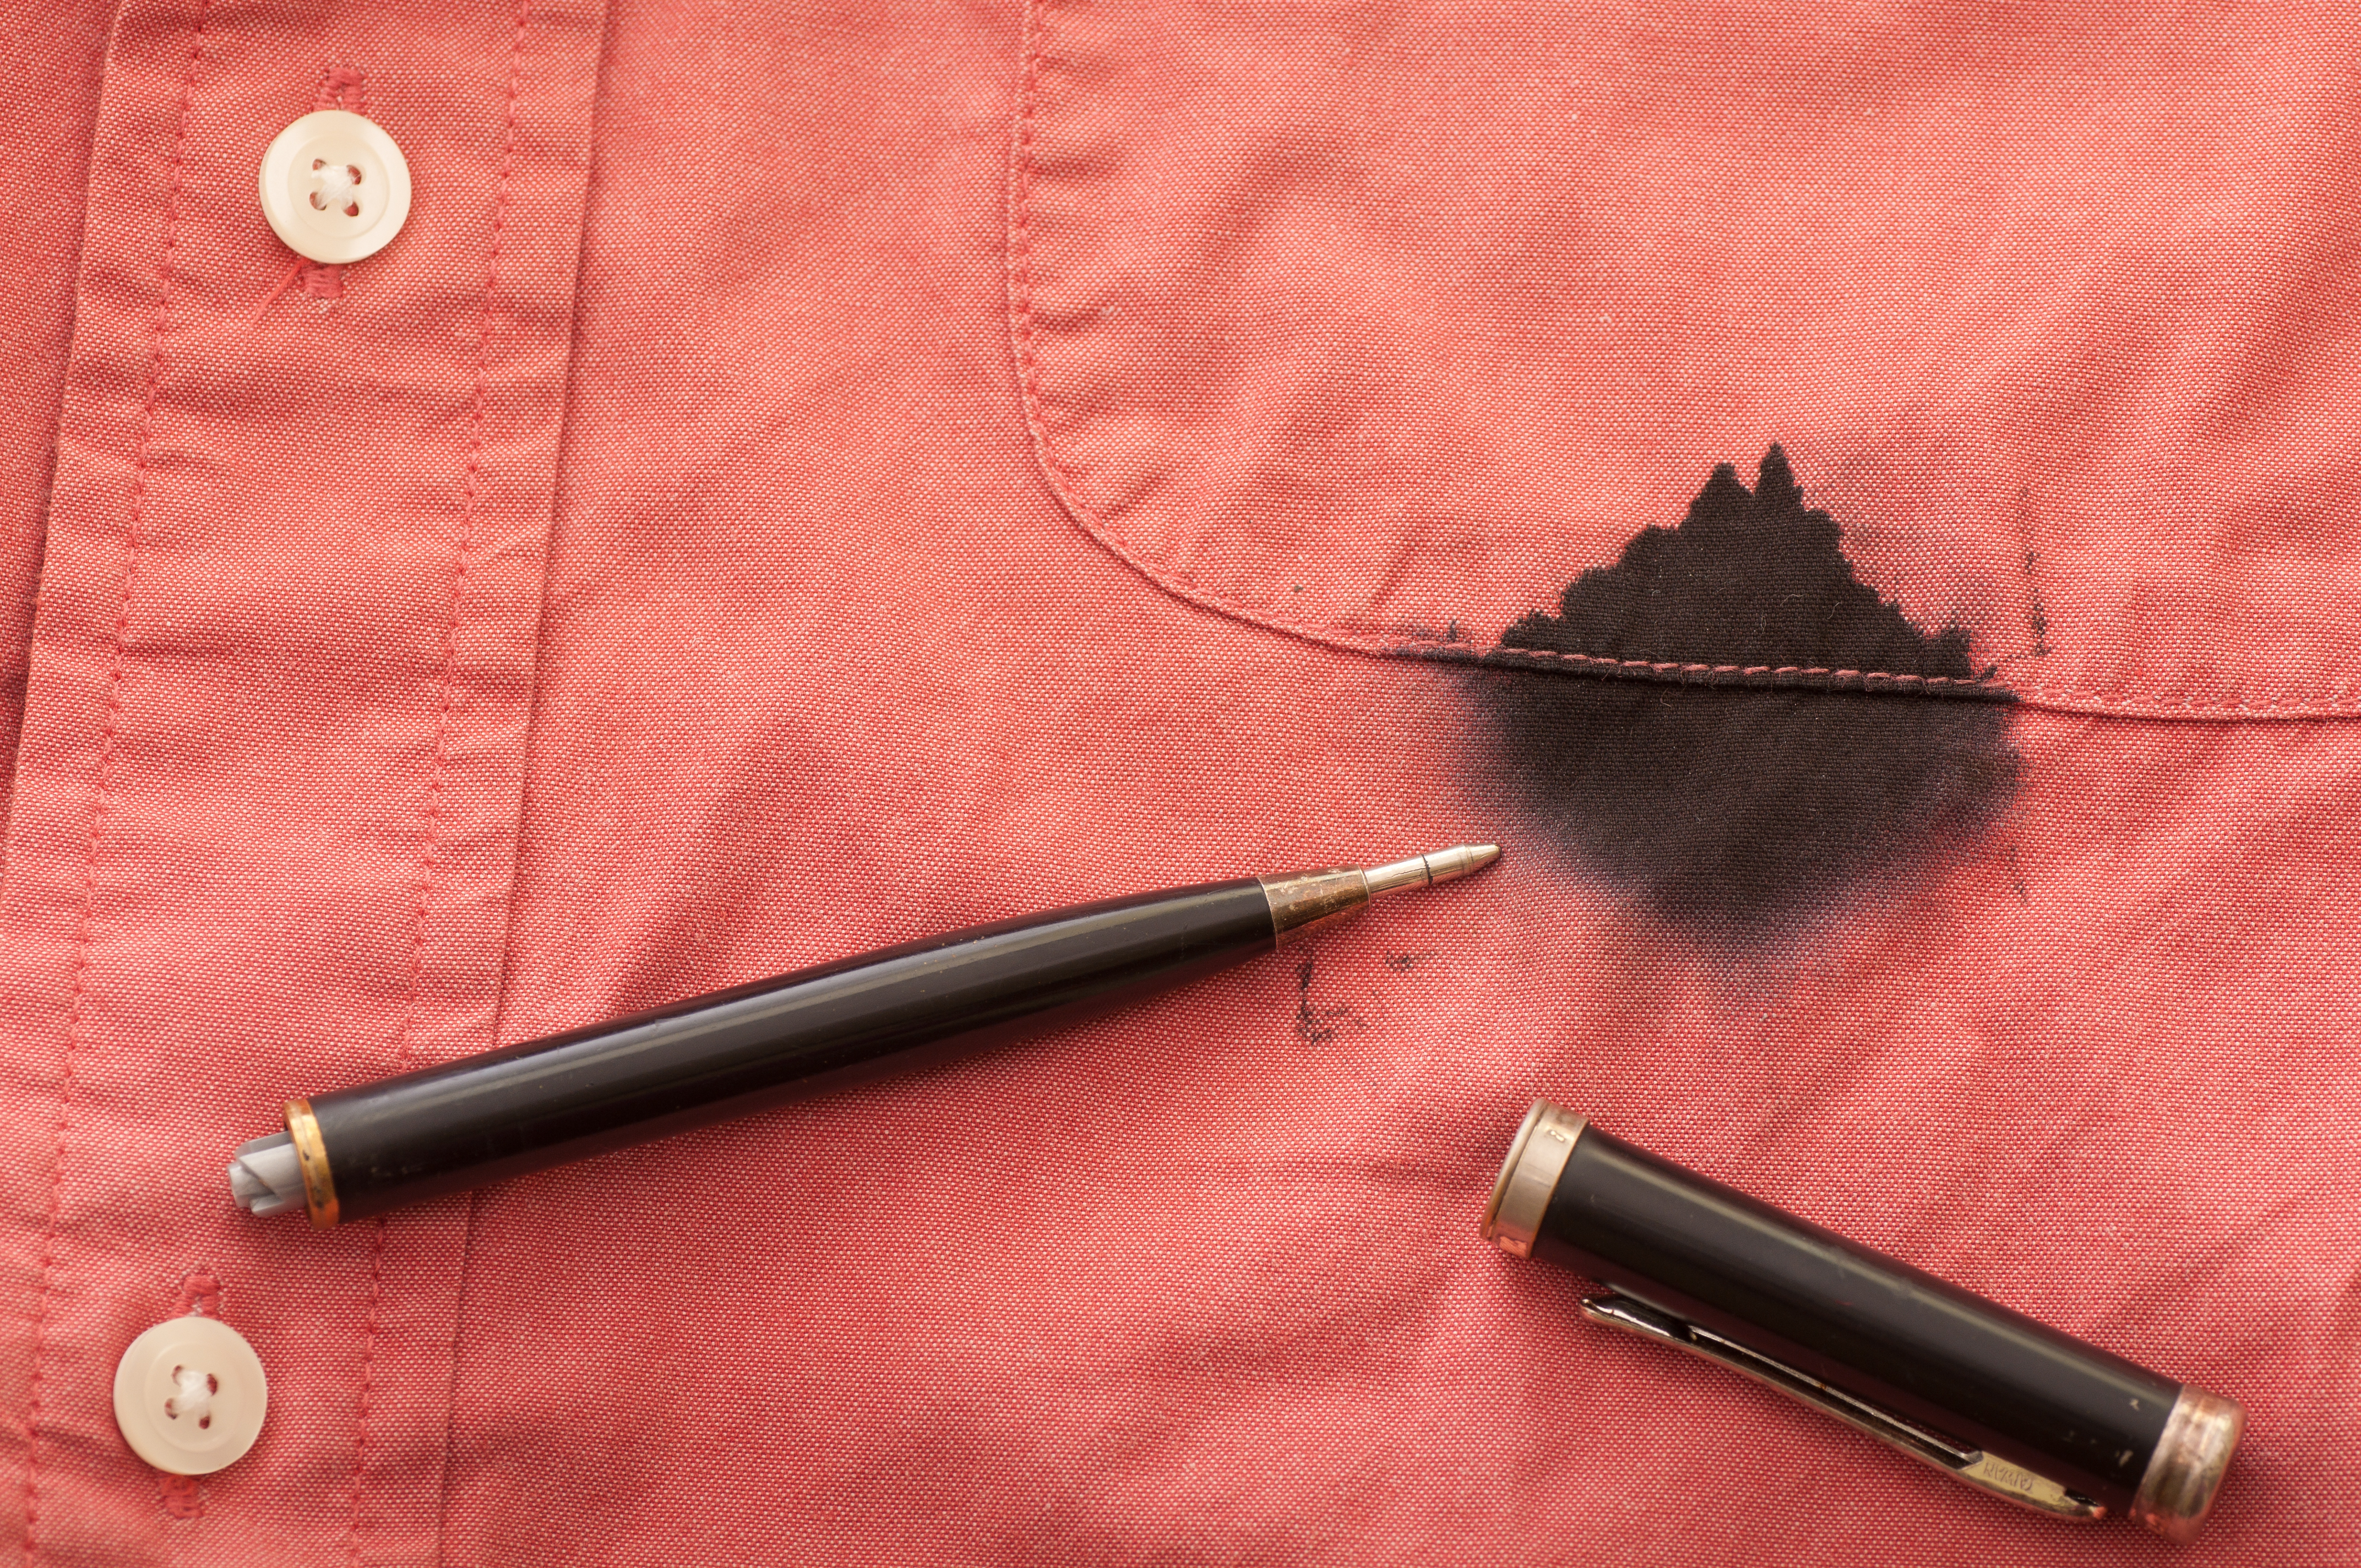 Une tache de stylo noir et d'encre sur une chemise couleur saumon | Source : Shutterstock